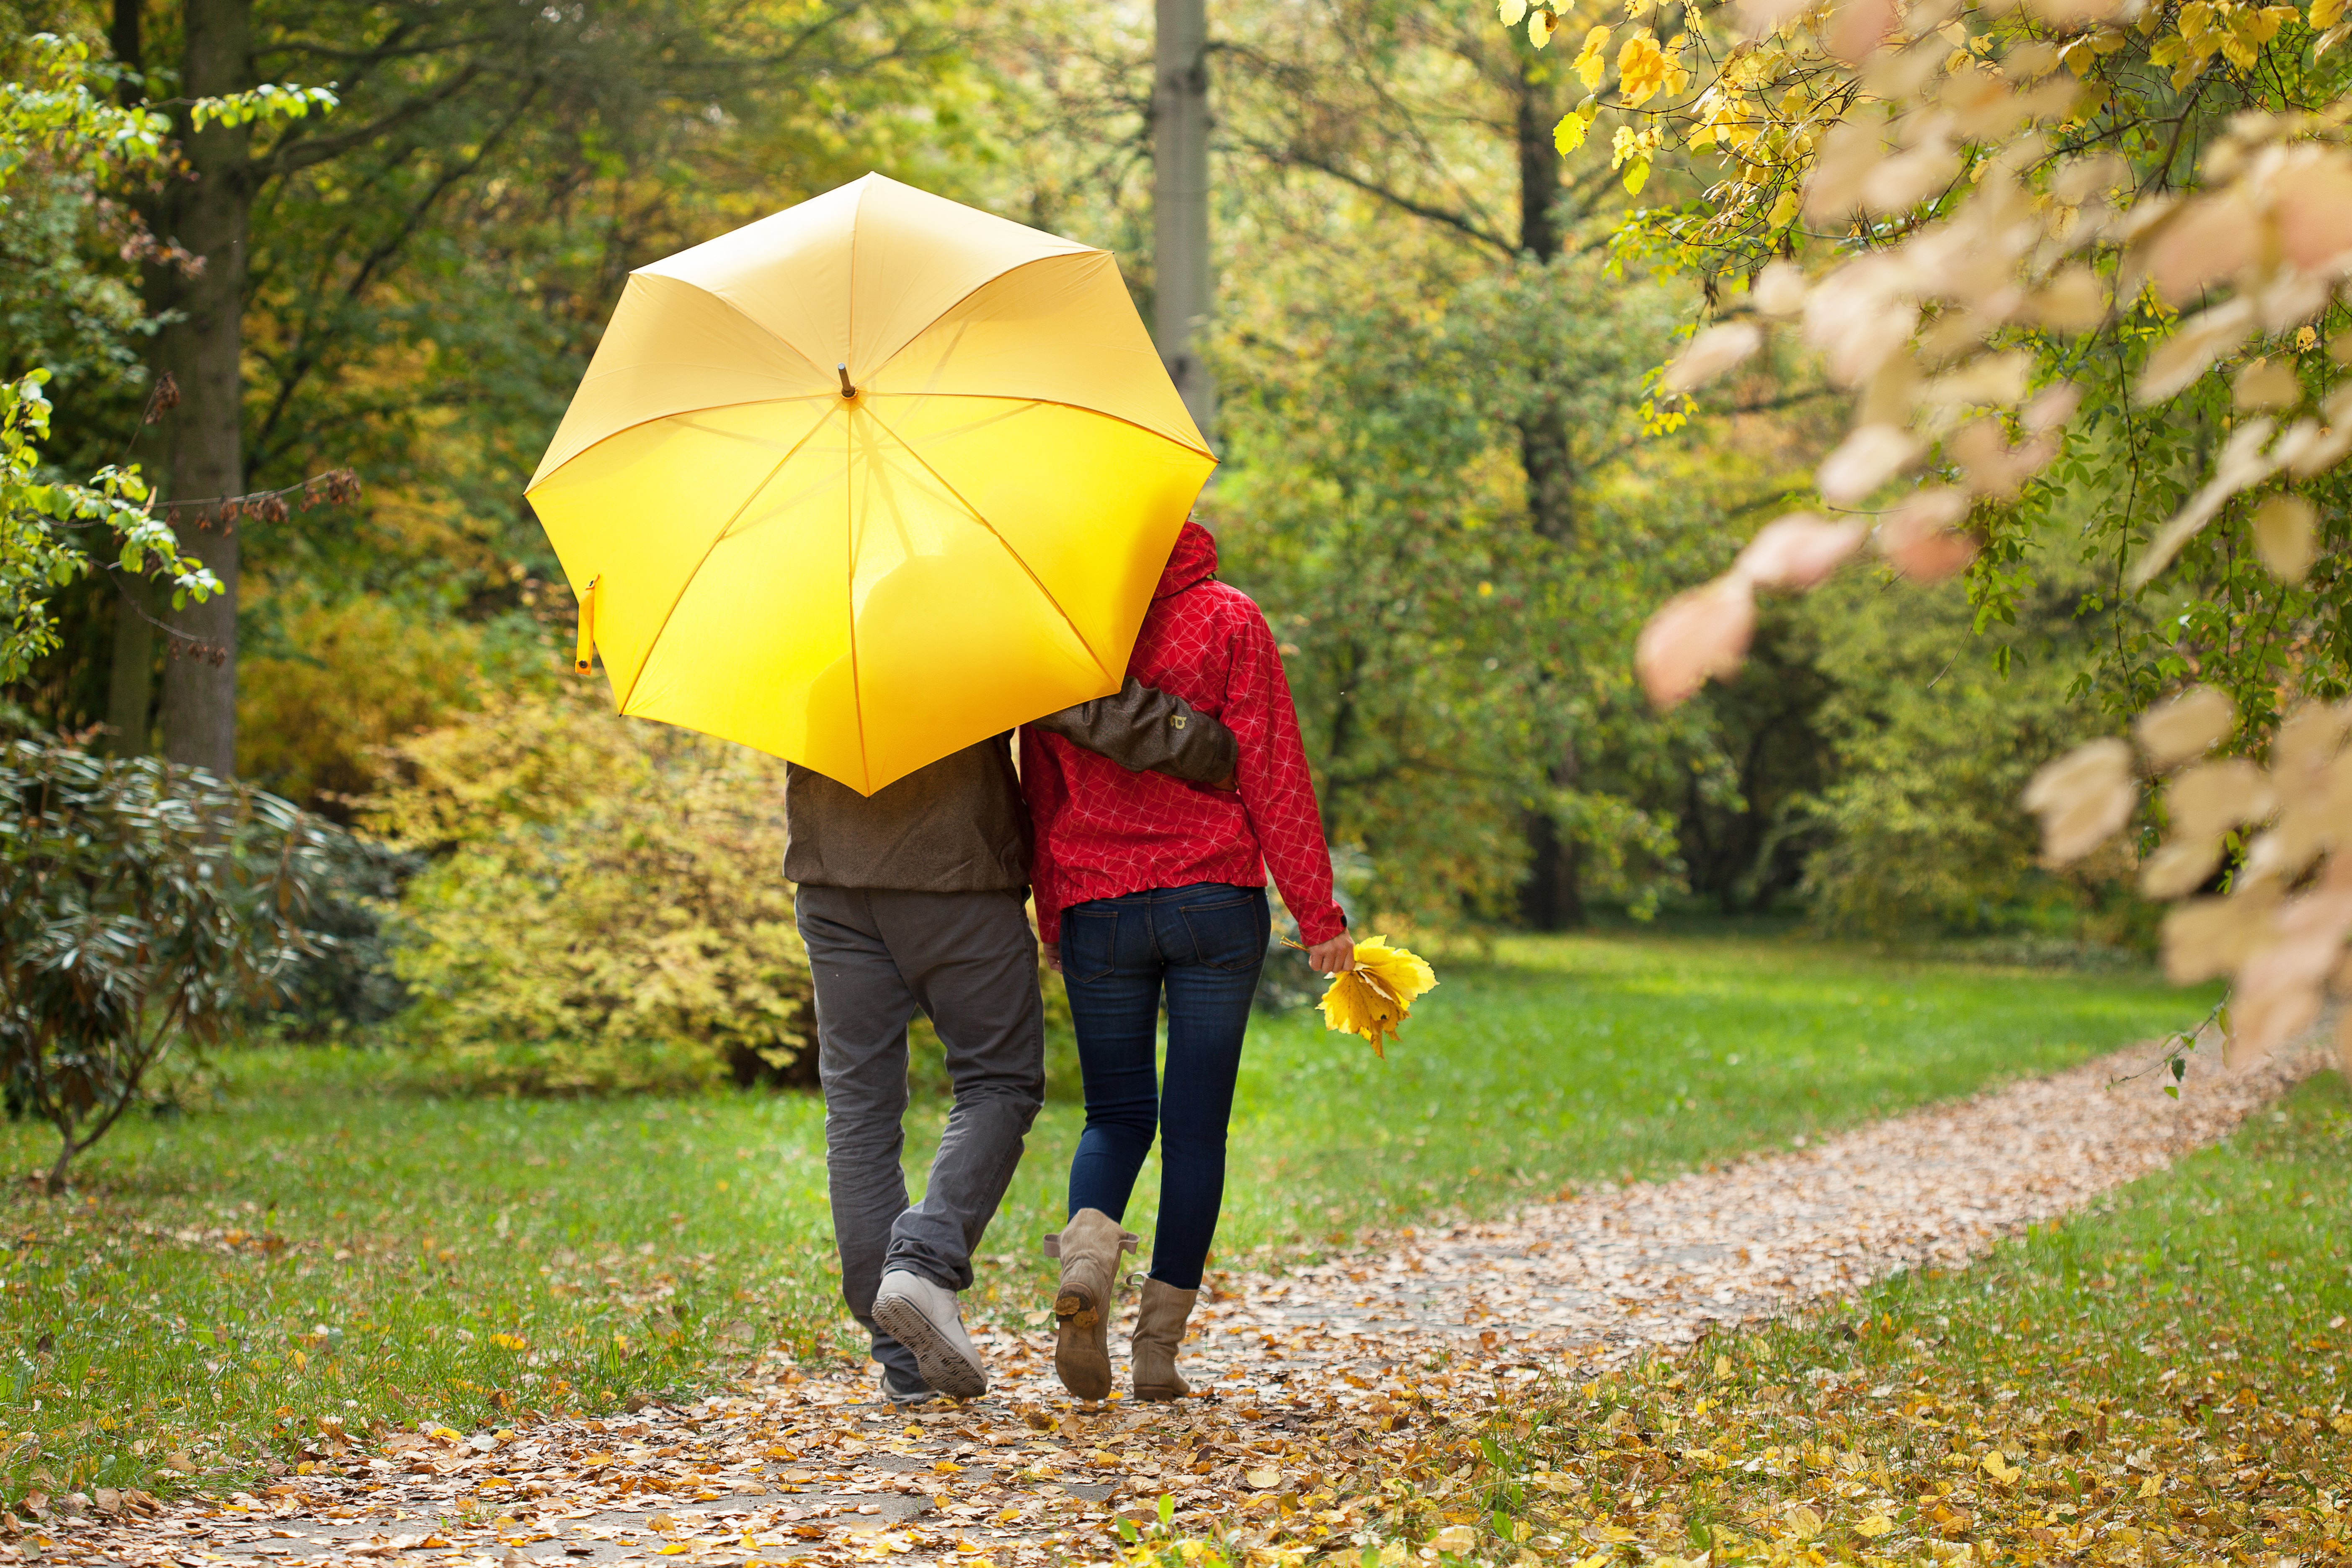 Одолжил ей зонтик. Осенняя прогулка. Мужчина с зонтом в парке. Осень люди с зонтами. Прогулка в парке с зонтиками.